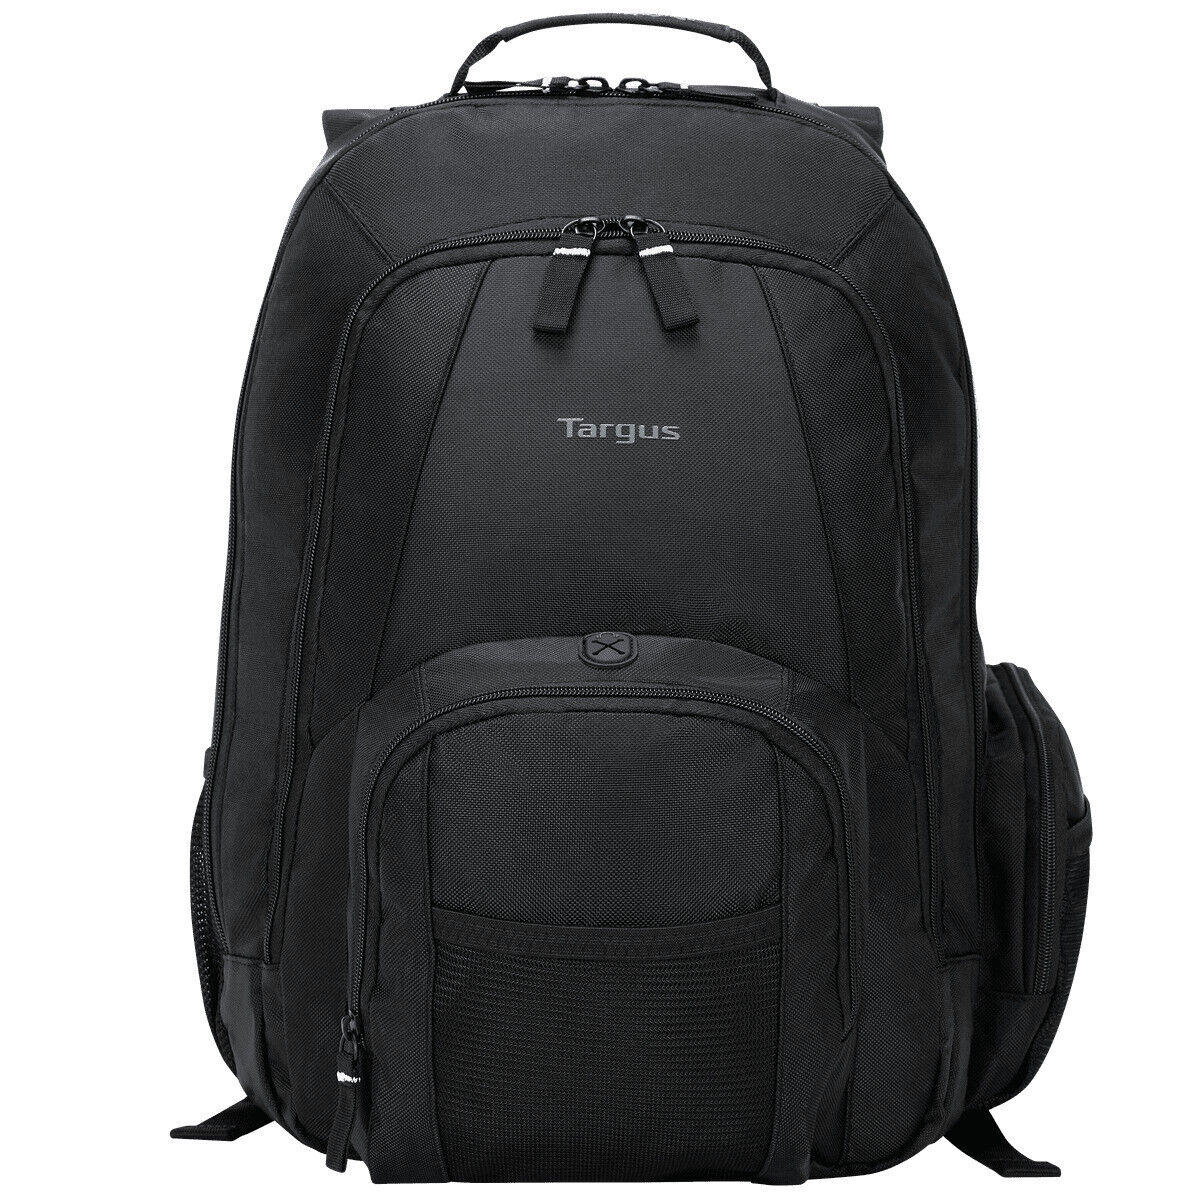 Targus Grove Laptop Backpack Black (CVR600) 572957 New